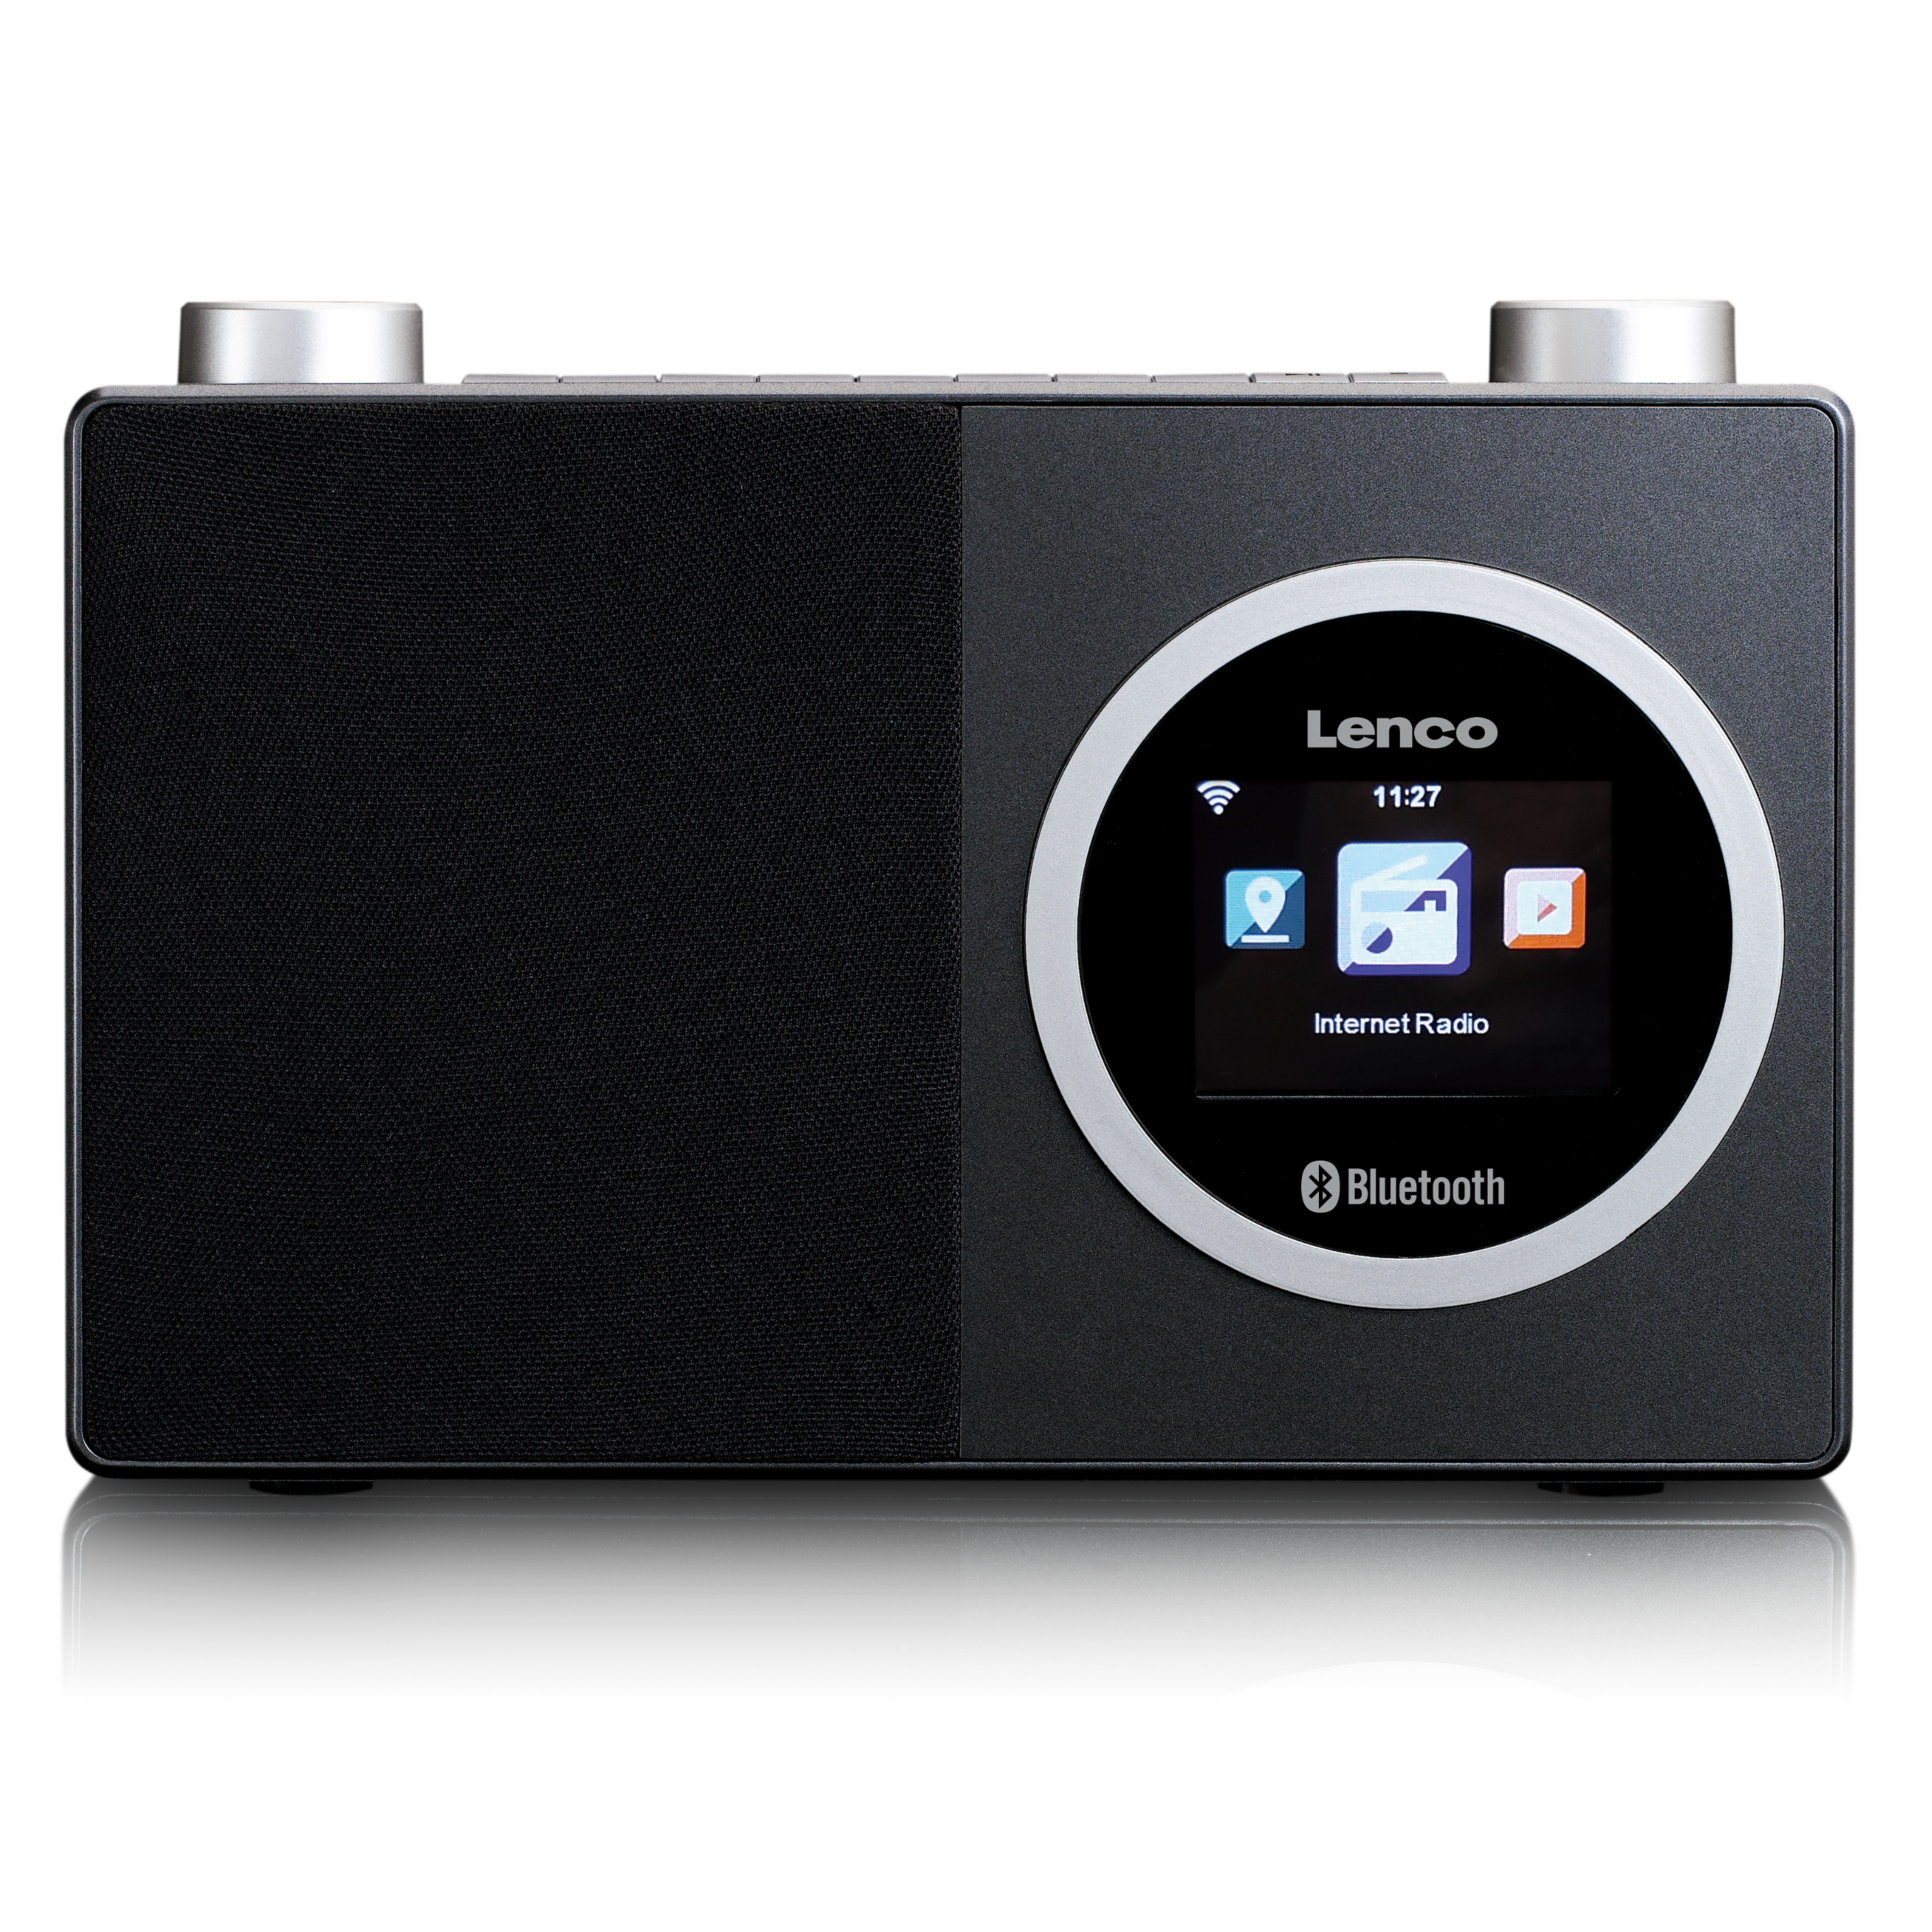 LENCO Farbdisplay mit Kompaktes Internetradio DIR-70BK Internet Radio, Bluetooth, Internet, Radio, Bluetooth®, - Schwarz-Silber und